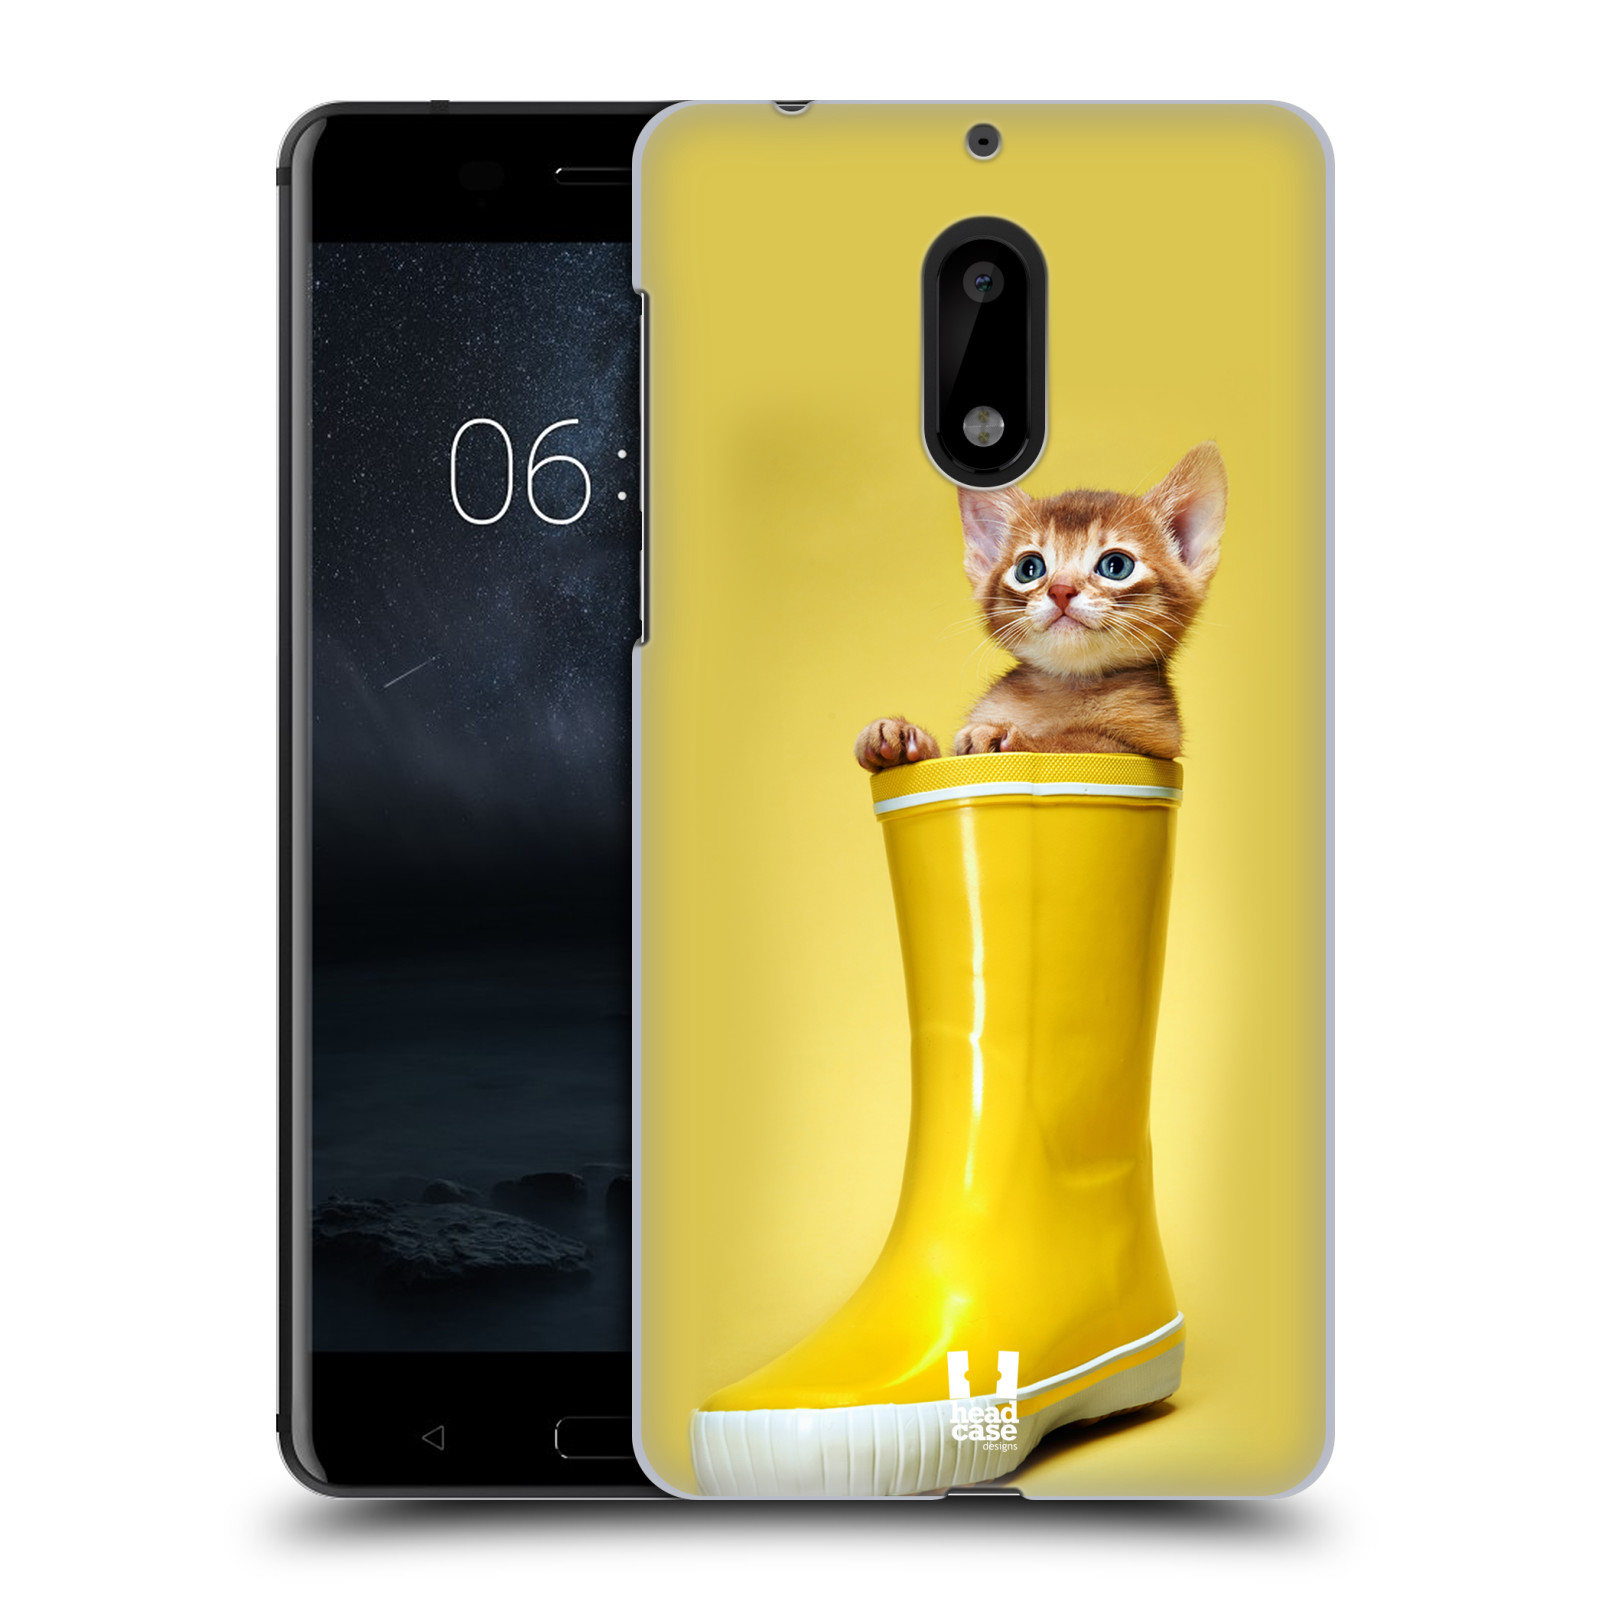 HEAD CASE plastový obal na mobil Nokia 6 vzor Legrační zvířátka kotě v botě žlutá